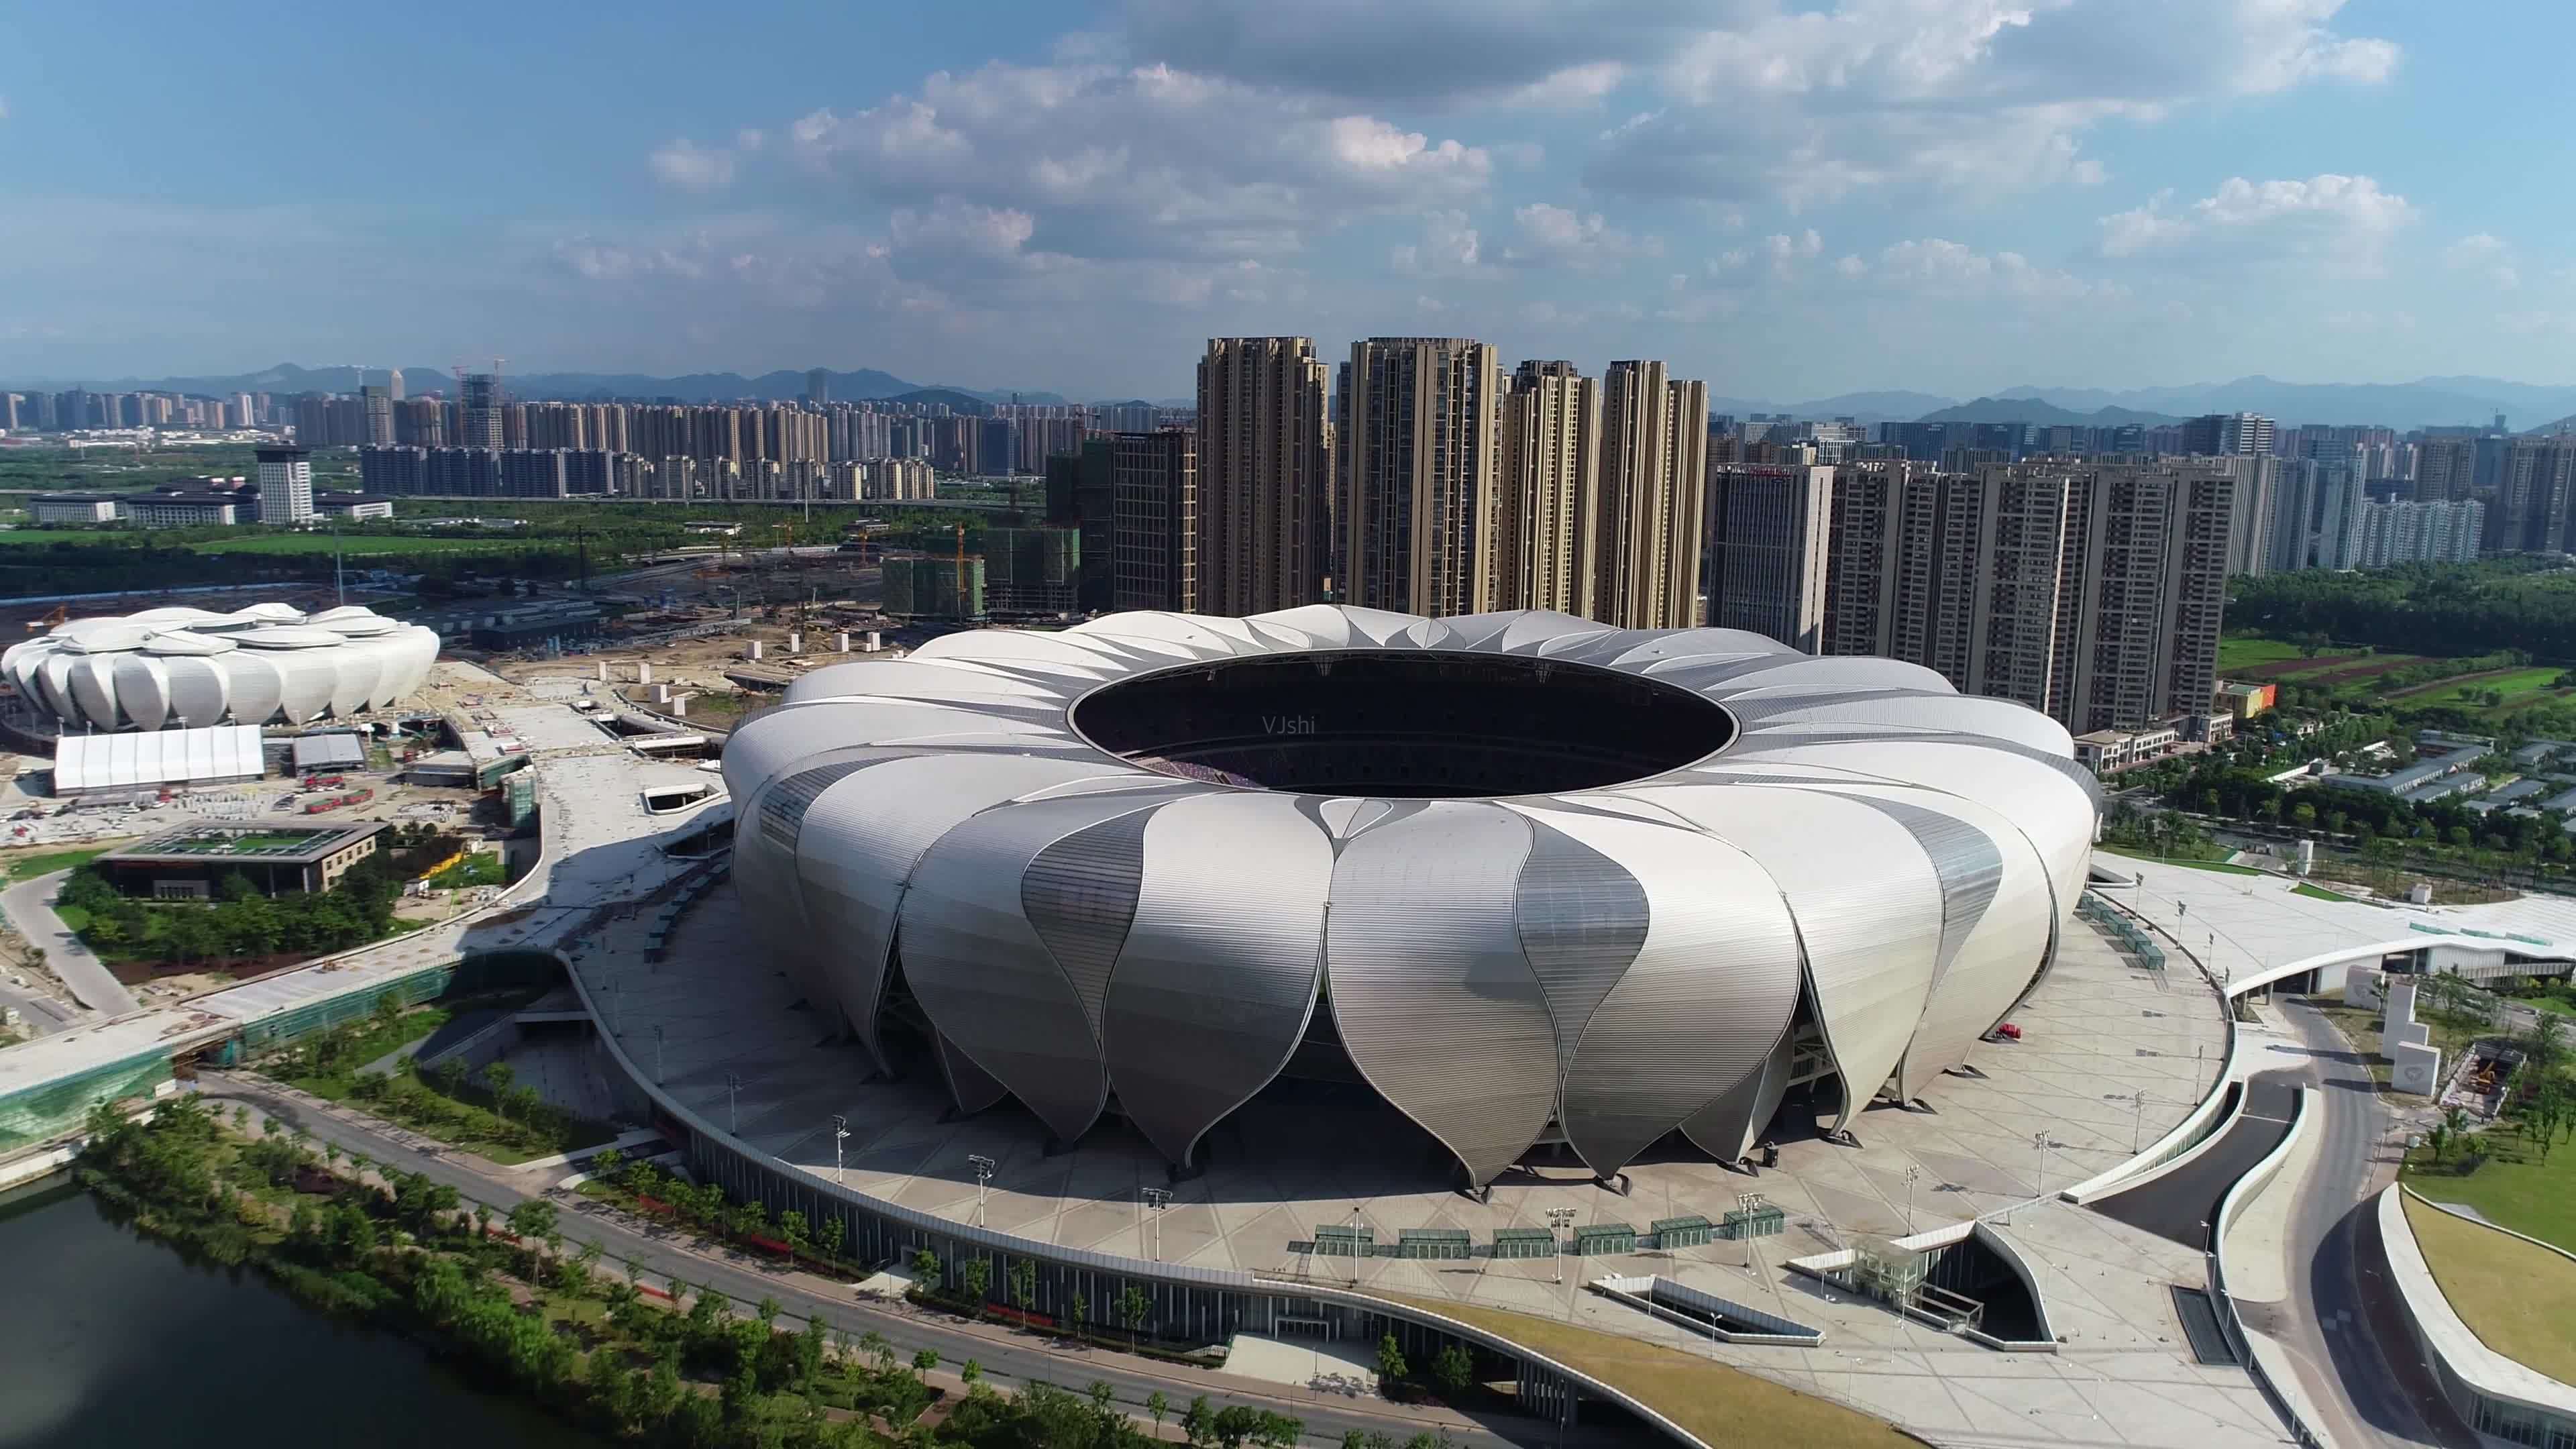 浙江最大的体育场之一,是杭州城市新地标,灵感来源于钱塘江潮水